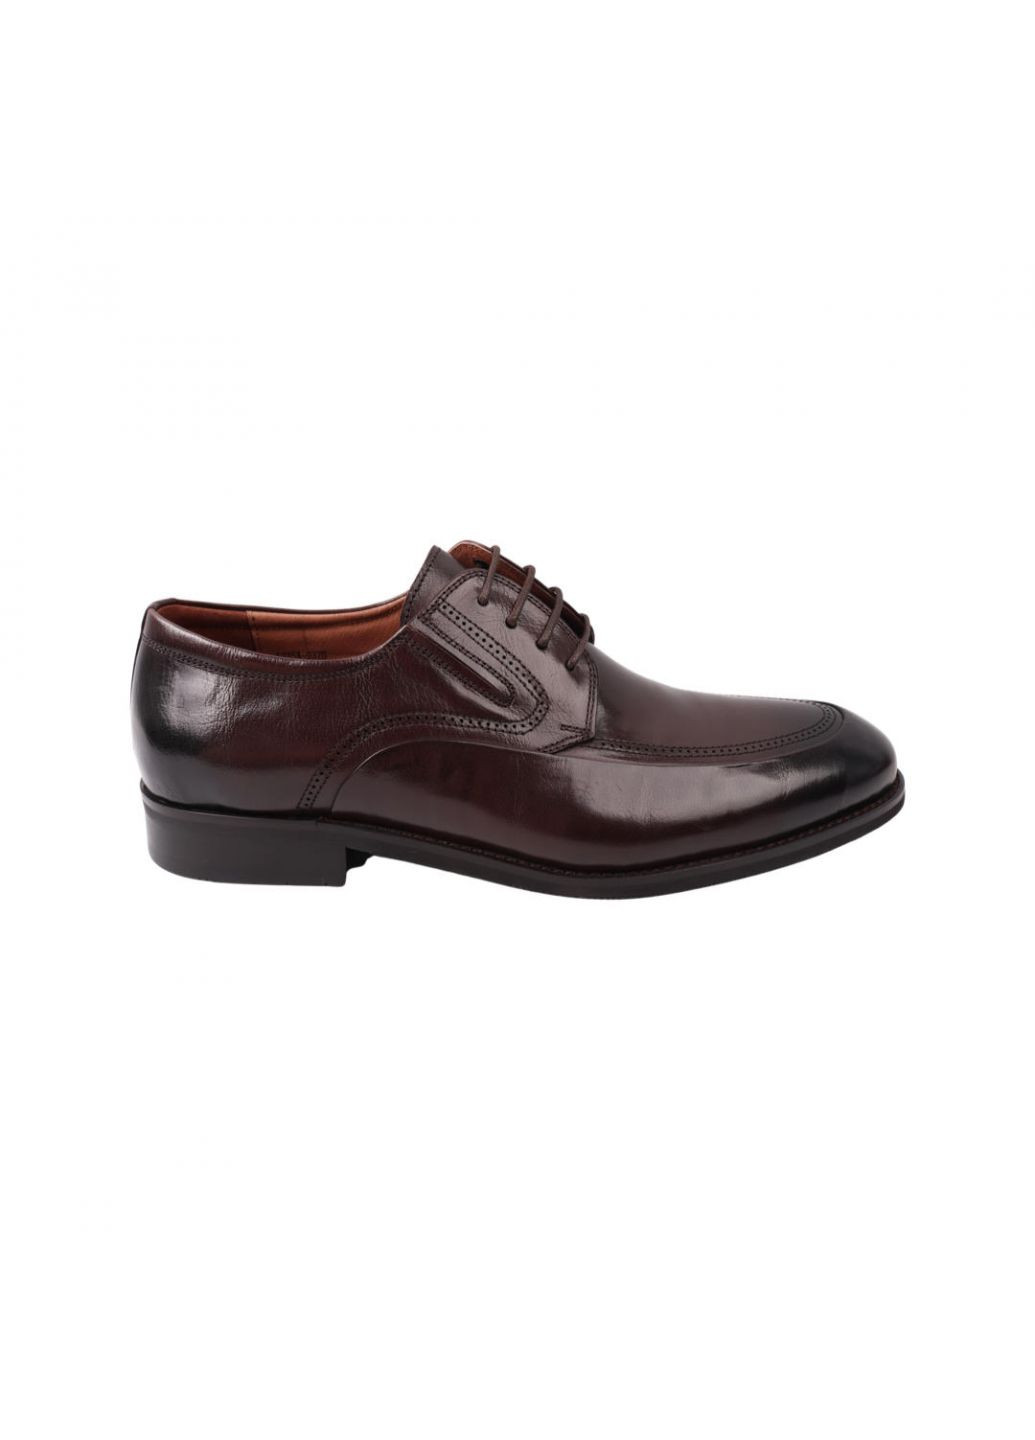 Туфлі чоловічі Lido Marinozi коричневі натуральна шкіра Lido Marinozzi 236-21dt (257439643)